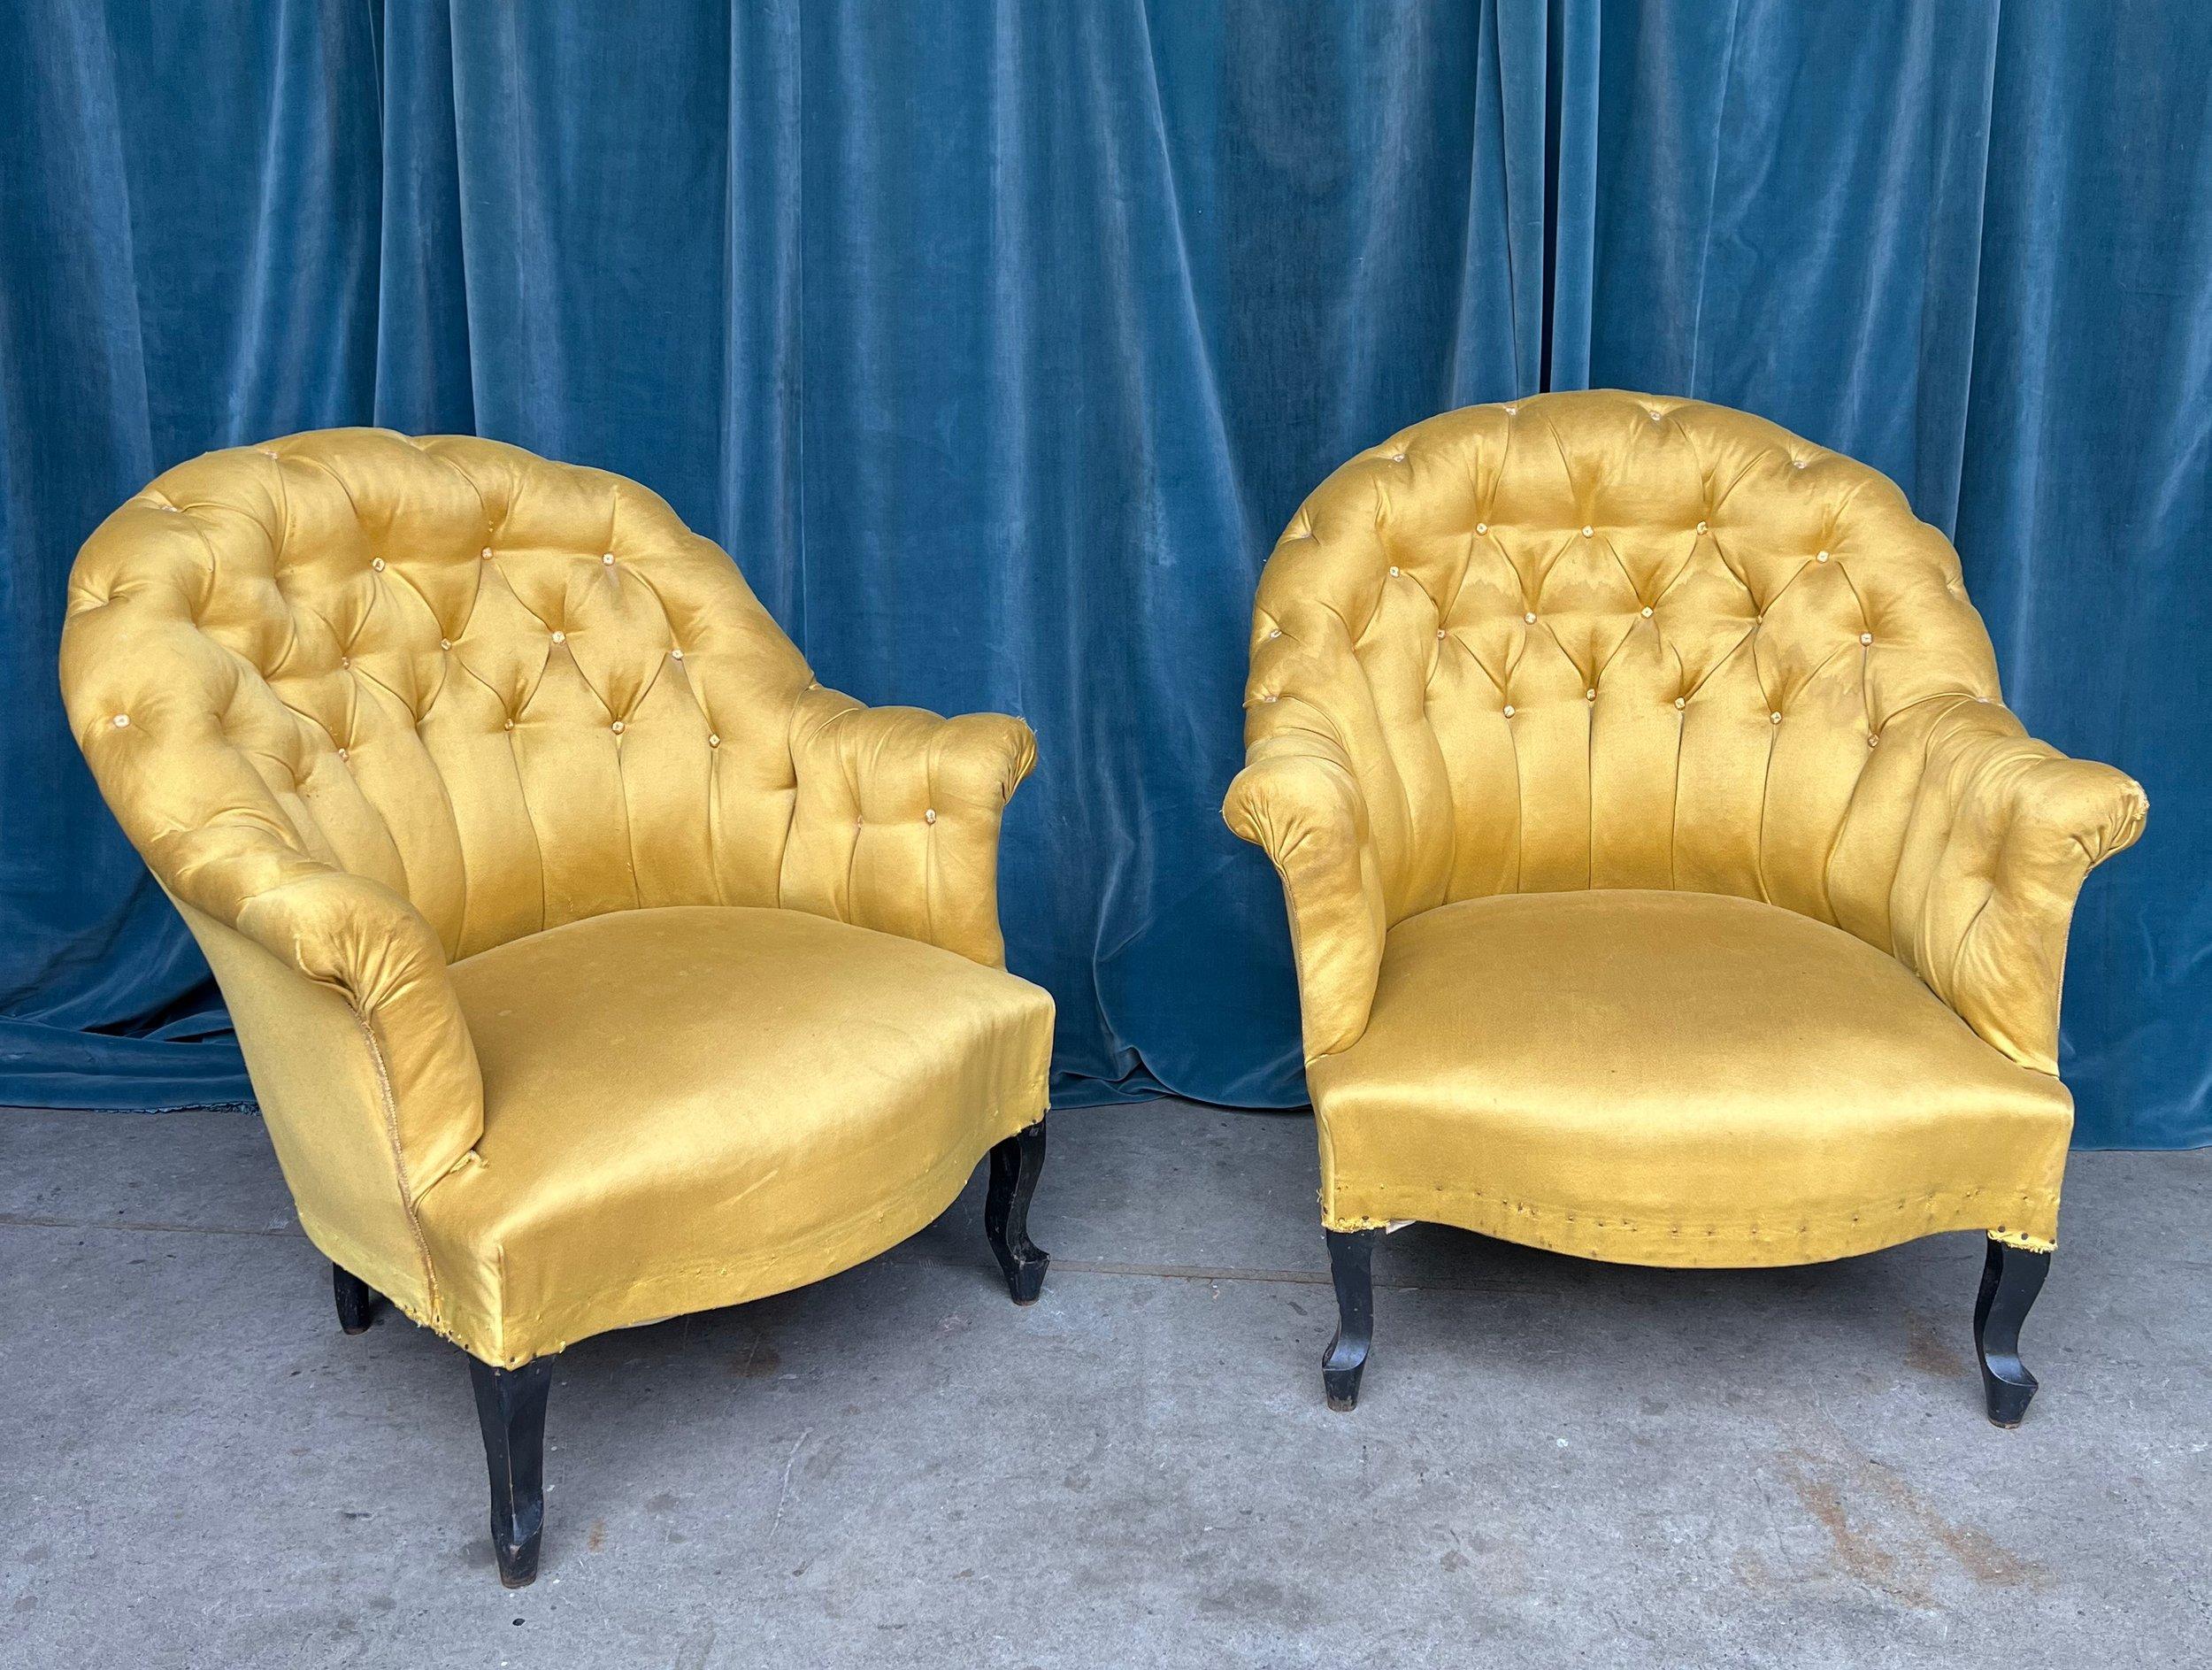 Une belle paire de fauteuils français Napoléon III de la fin du 19e siècle, offrant à la fois confort et style. Revêtues d'un superbe tissu or vintage, ces chaises ont une présence majestueuse qui s'intègre parfaitement dans un décor traditionnel.